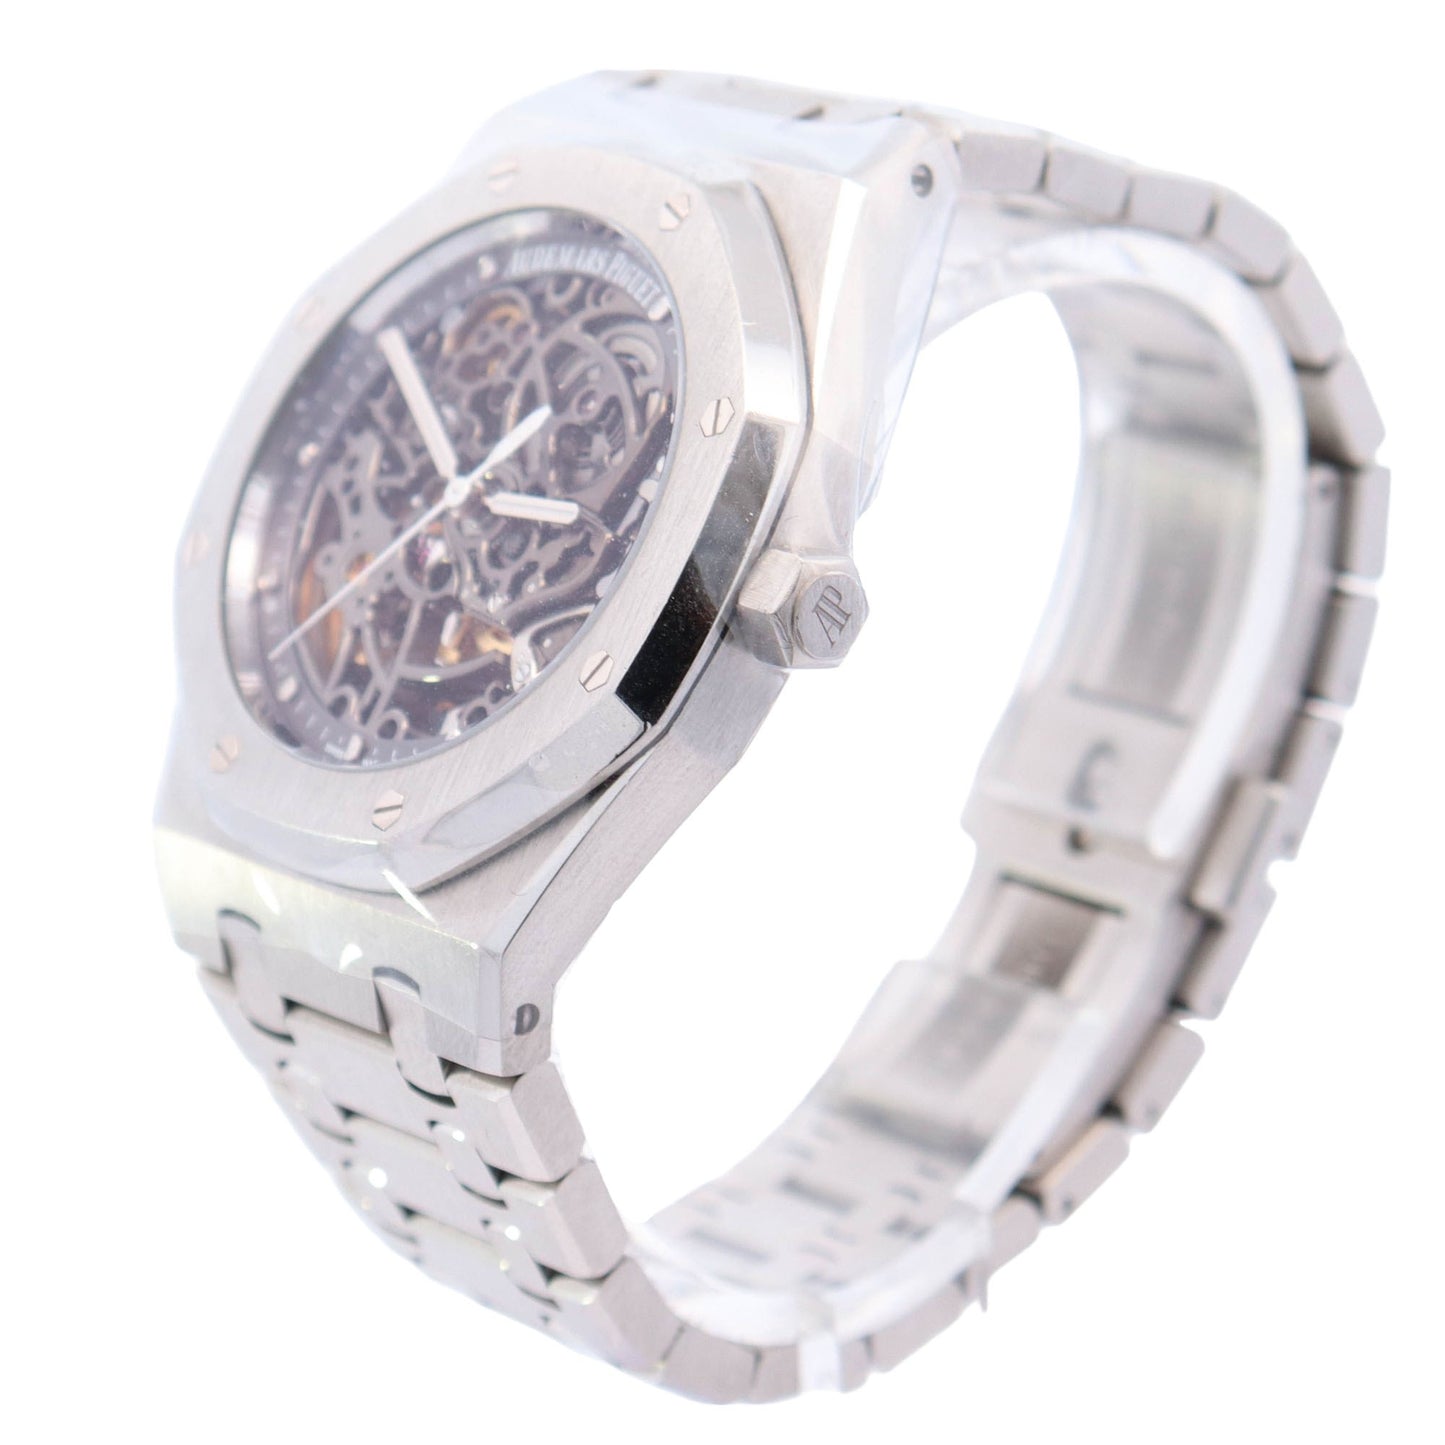 Audemars Piguet Royal Oak 39mm Stainless Steel Skeleton Dial Watch Ref# 15305ST.OO.1220ST.01 - Happy Jewelers Fine Jewelry Lifetime Warranty